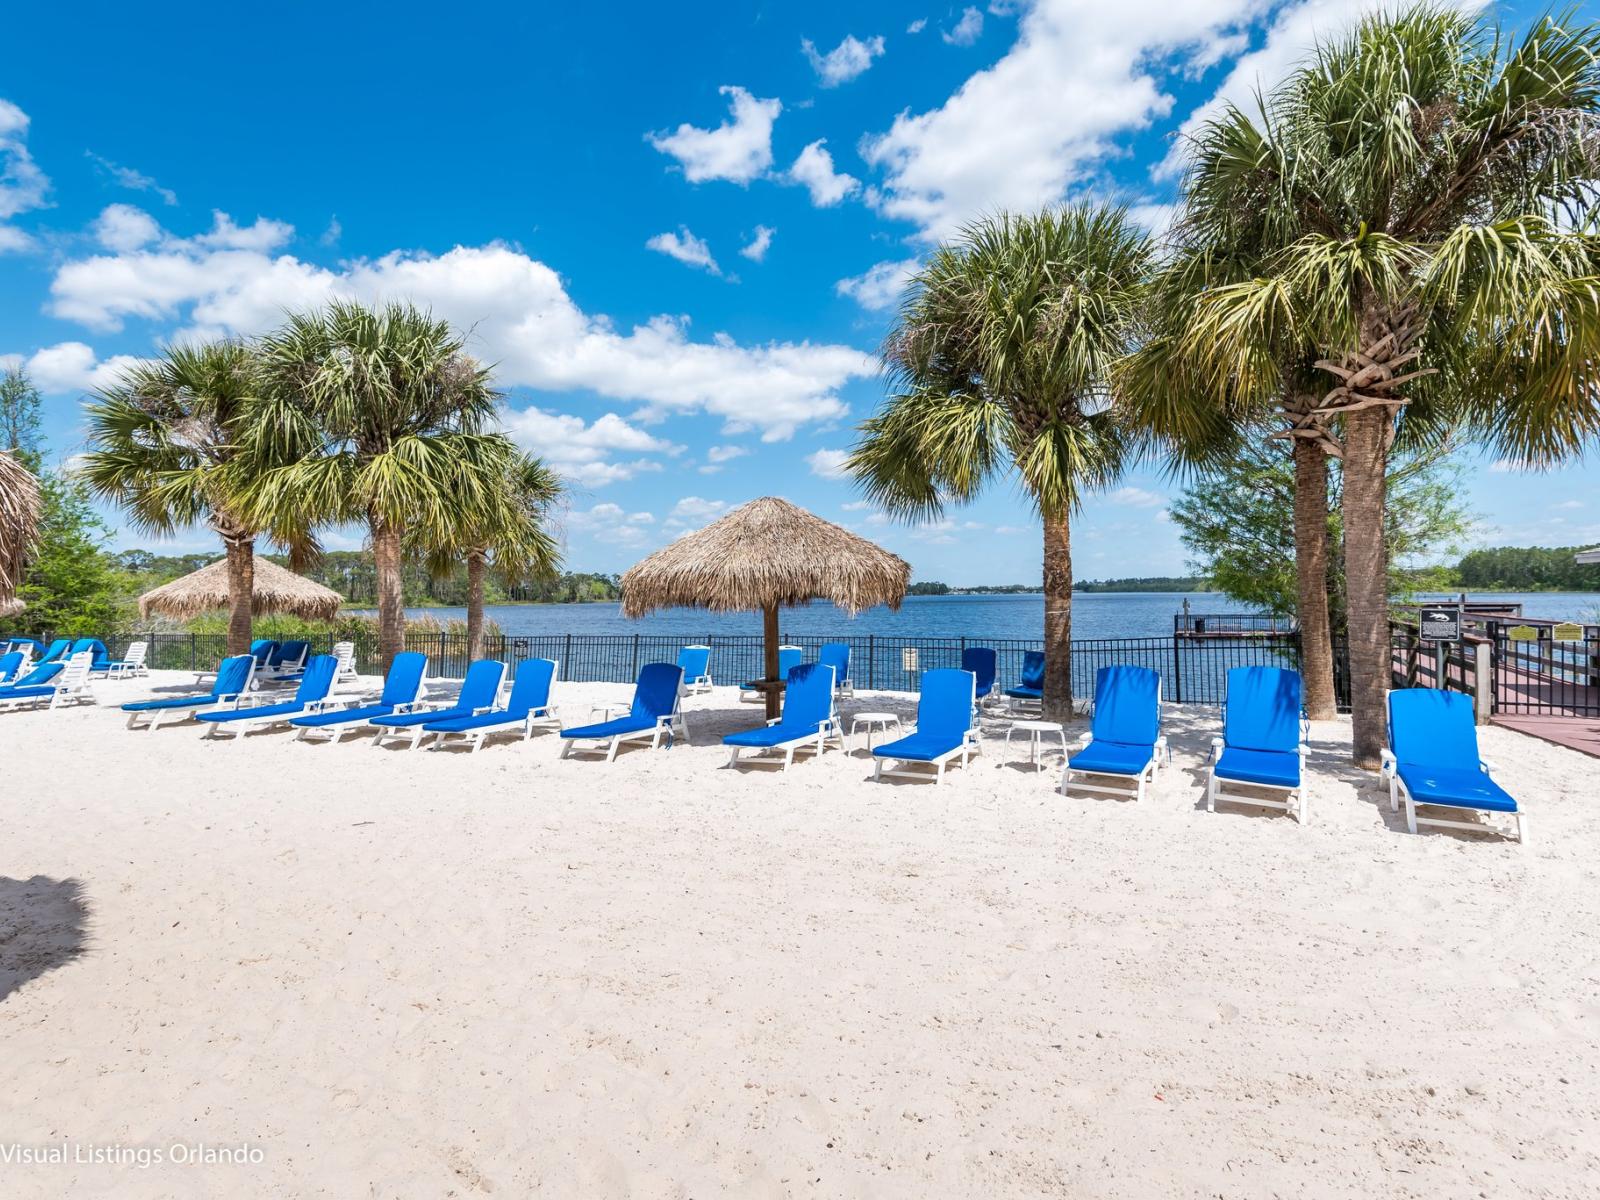 Bahama Bay beach lounge chairs